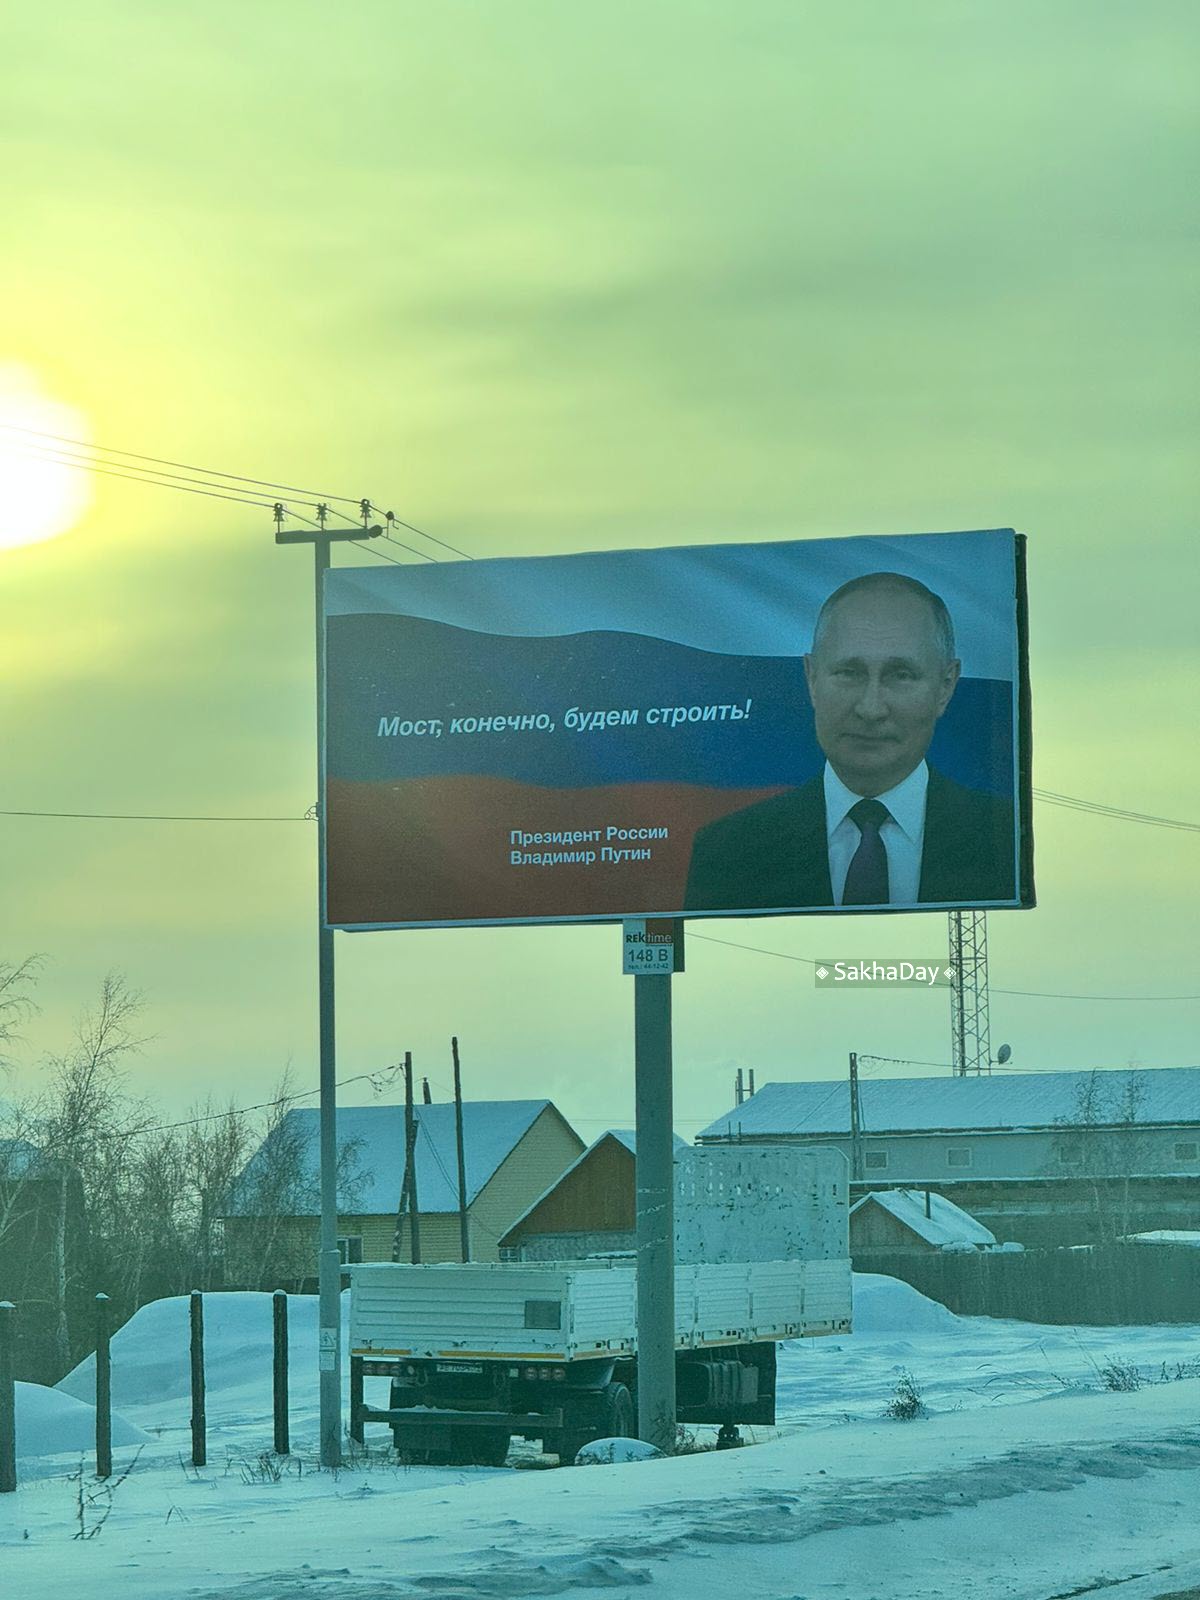 Фотофакт: В Якутске появились баннеры с цитатами Путина про Якутию